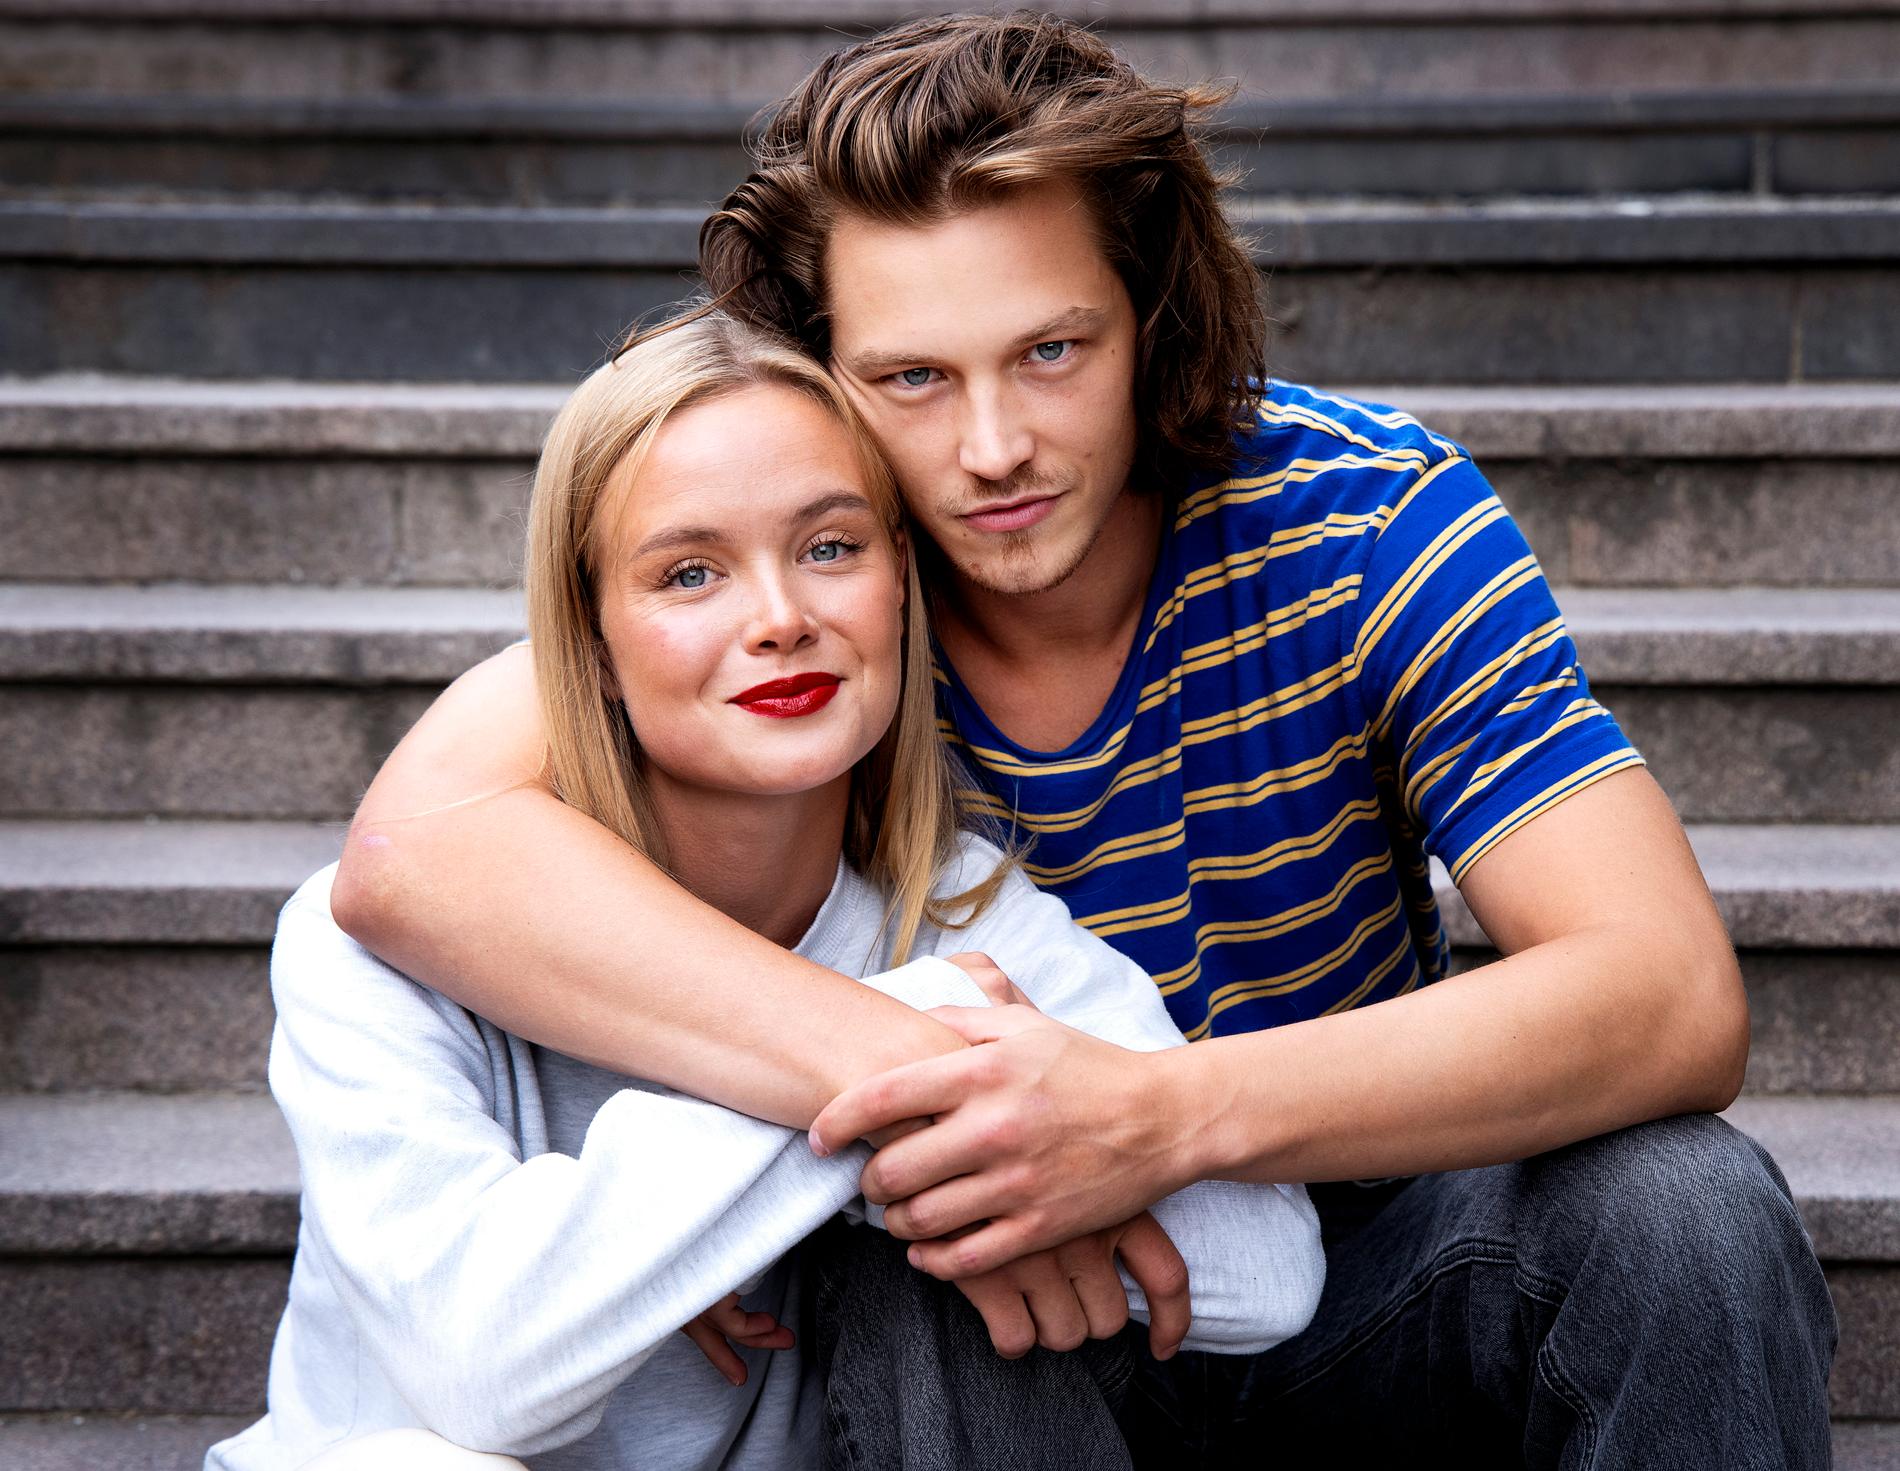 Matilda Källström och Simon Lööf spelar huvudrollerna i Viaplay-serien "Threesome".